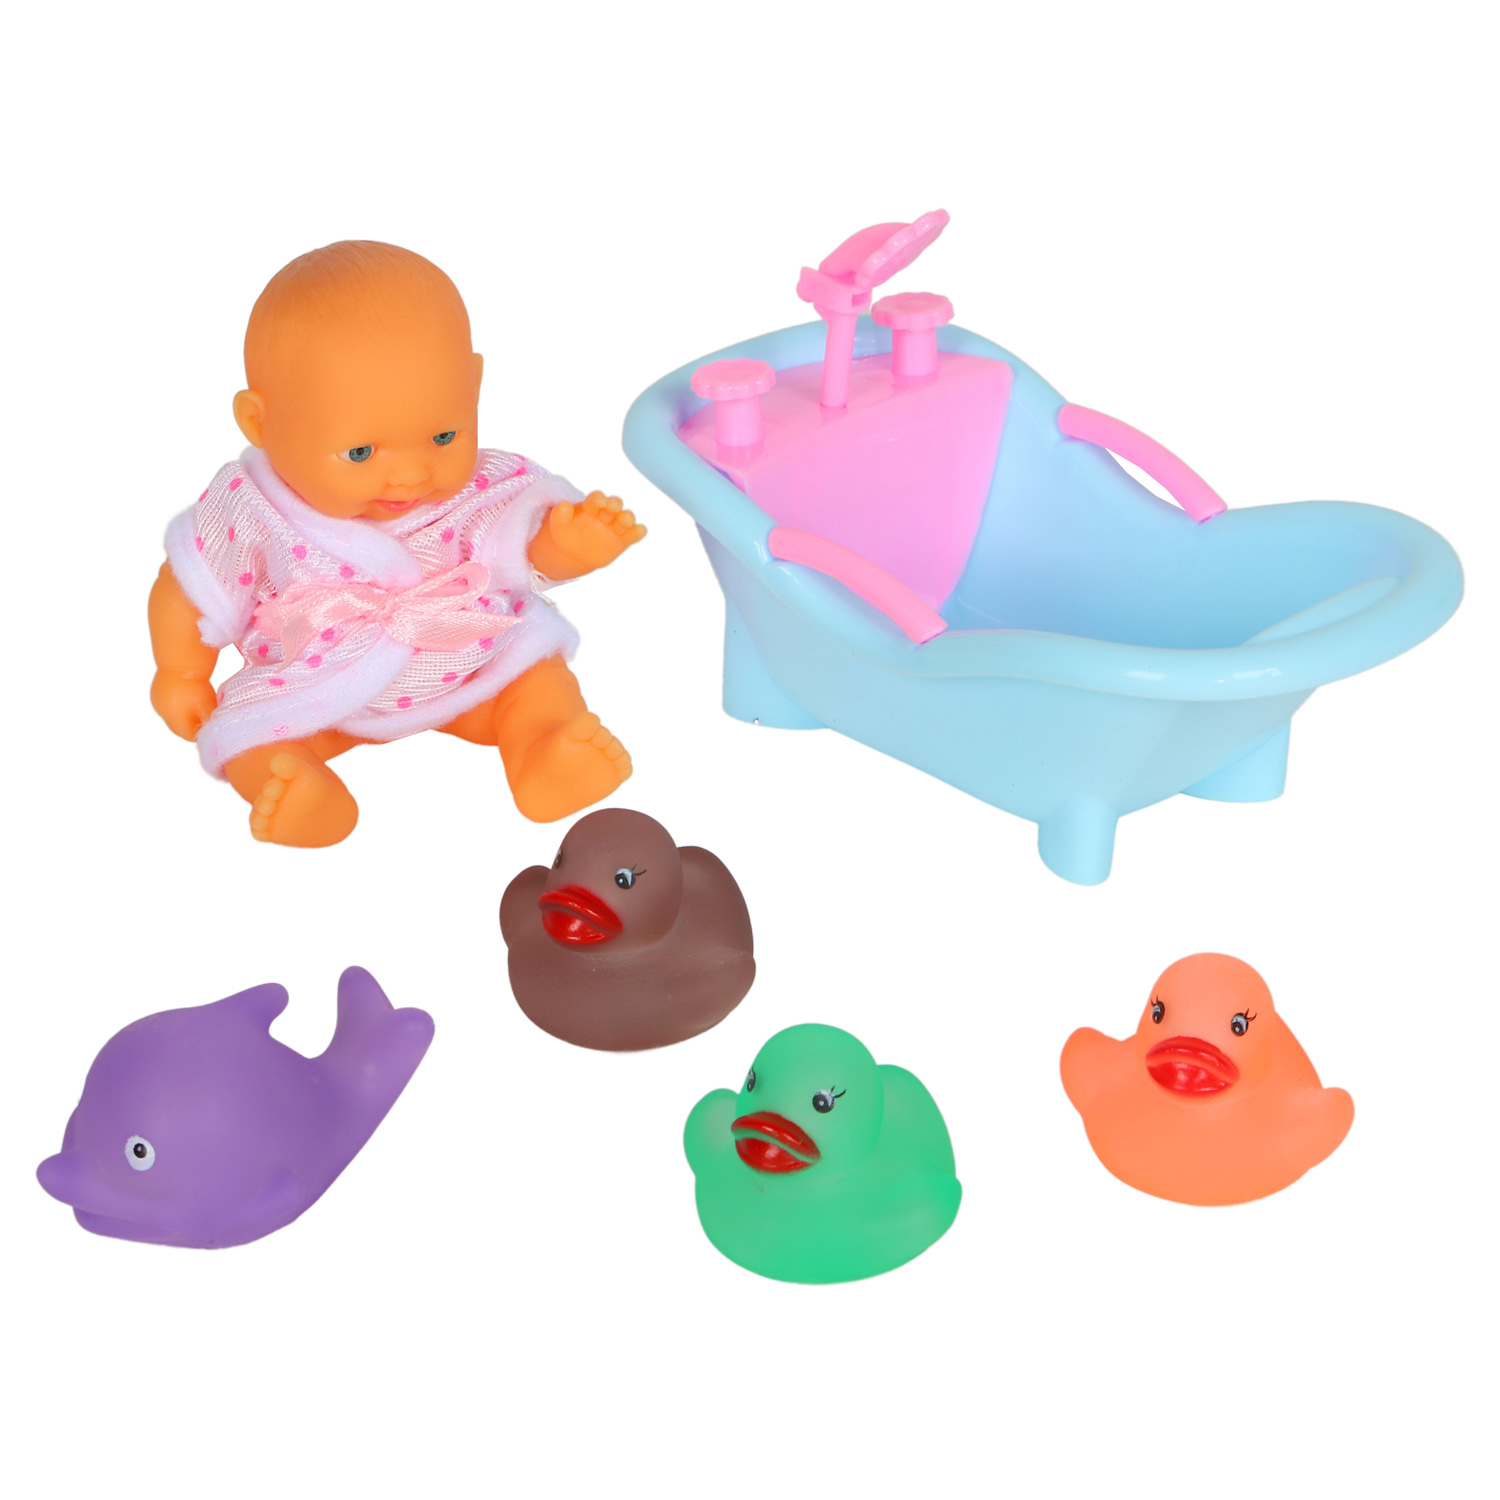 фото Игровой набор для купания компания друзей (пупс, утки, дельфин, ванна) jb0208367